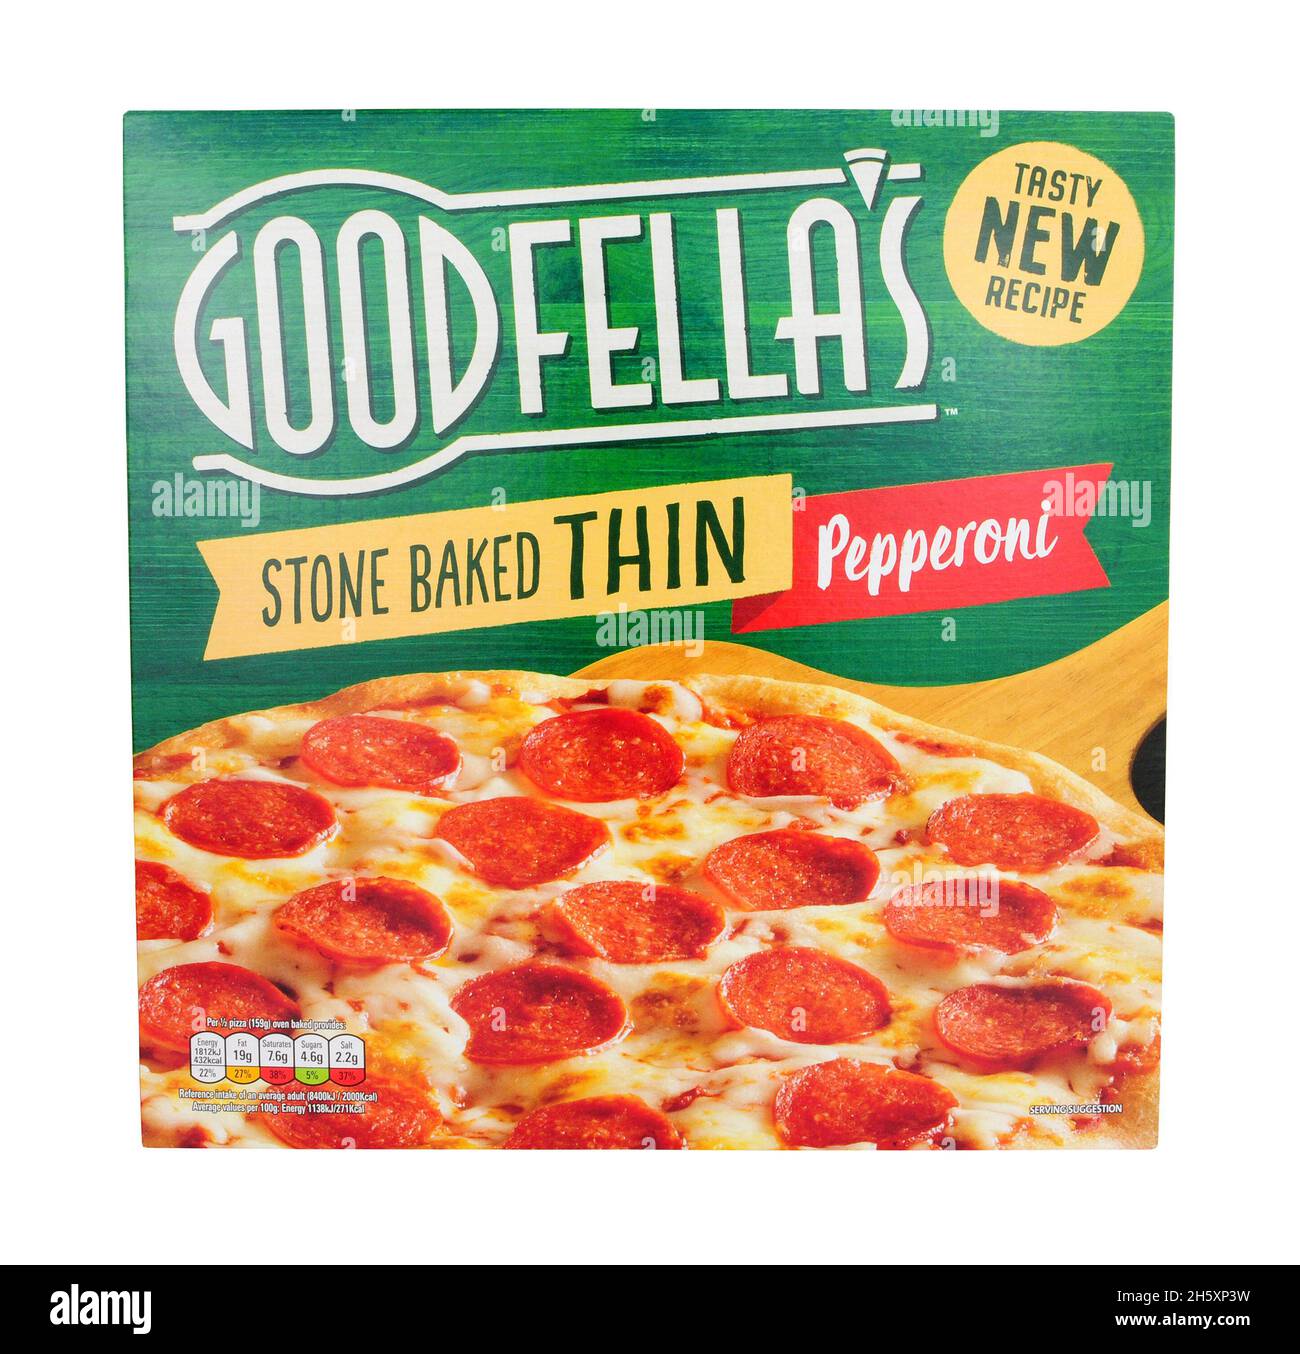 La nouvelle recette congelée de Goodfella mince pierre cuit pepperoni et fromage pizza emballage isolé sur un fond blanc Banque D'Images